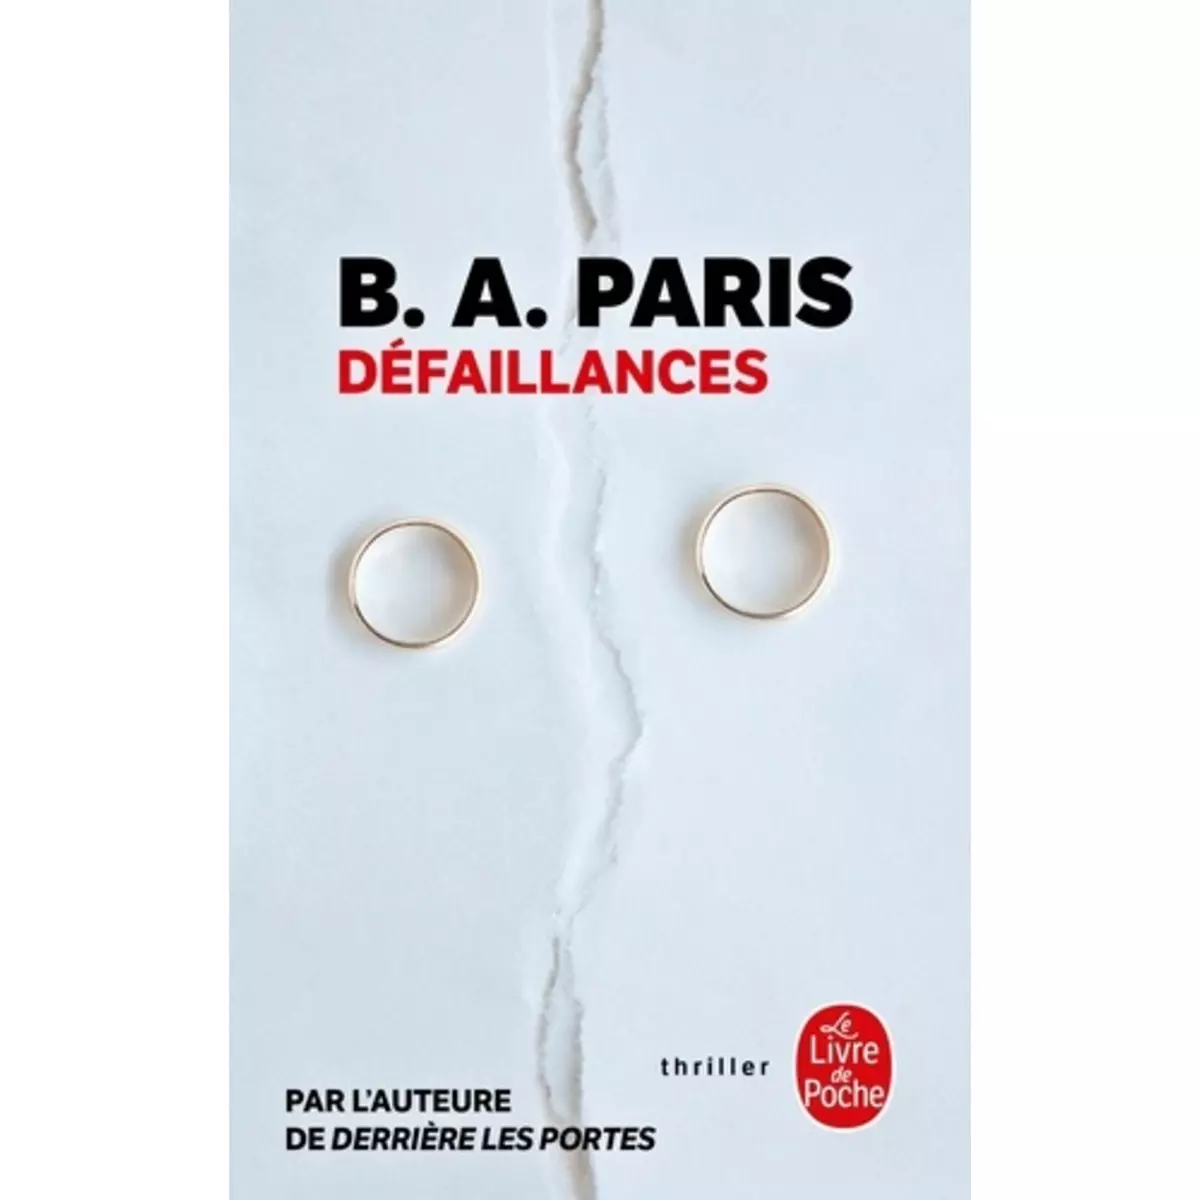  DEFAILLANCES, Paris B. A.